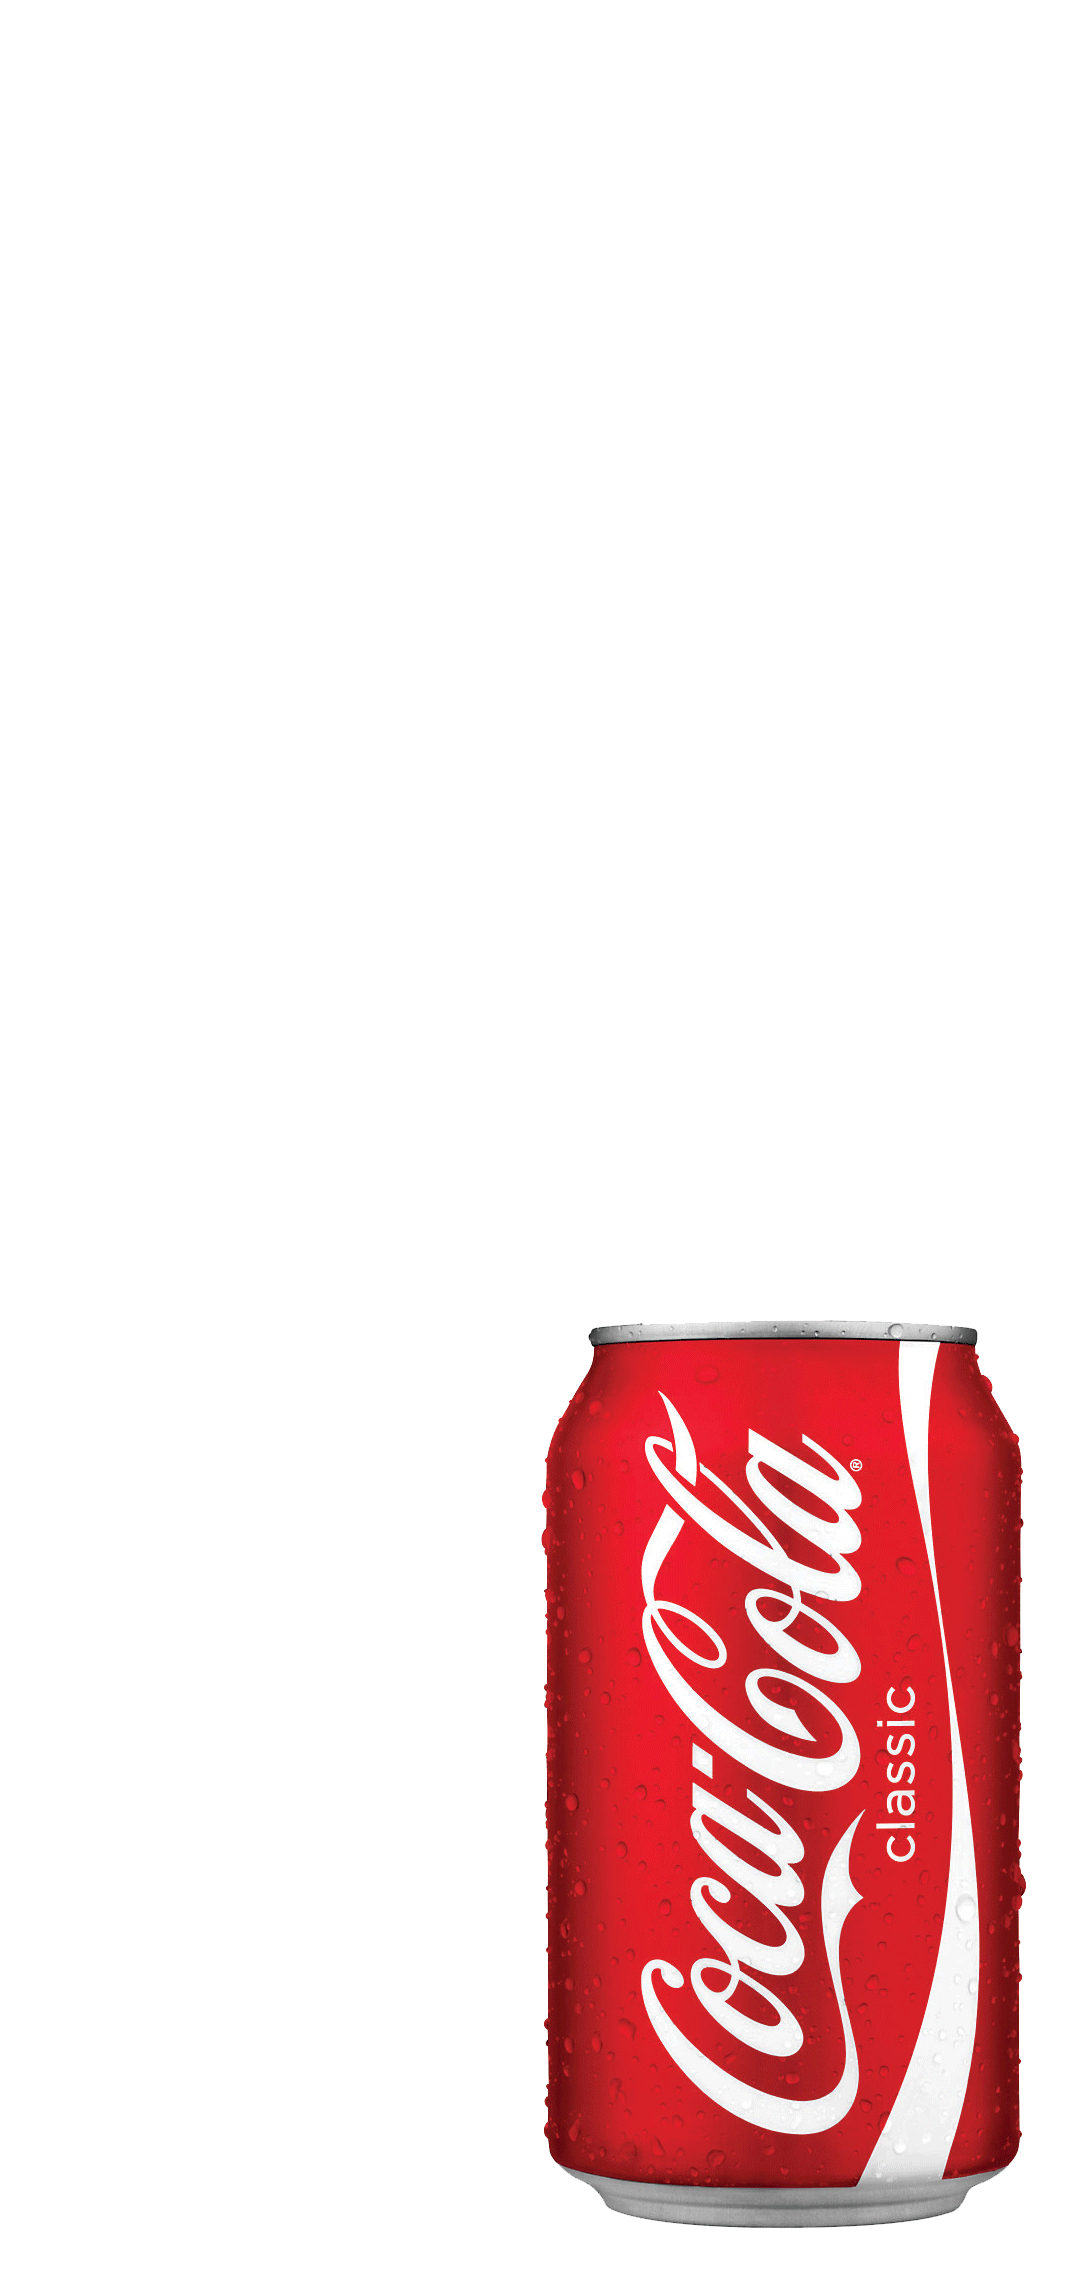 コカ コーラ 缶 Aquos Sense5g 壁紙 待ち受け スマラン